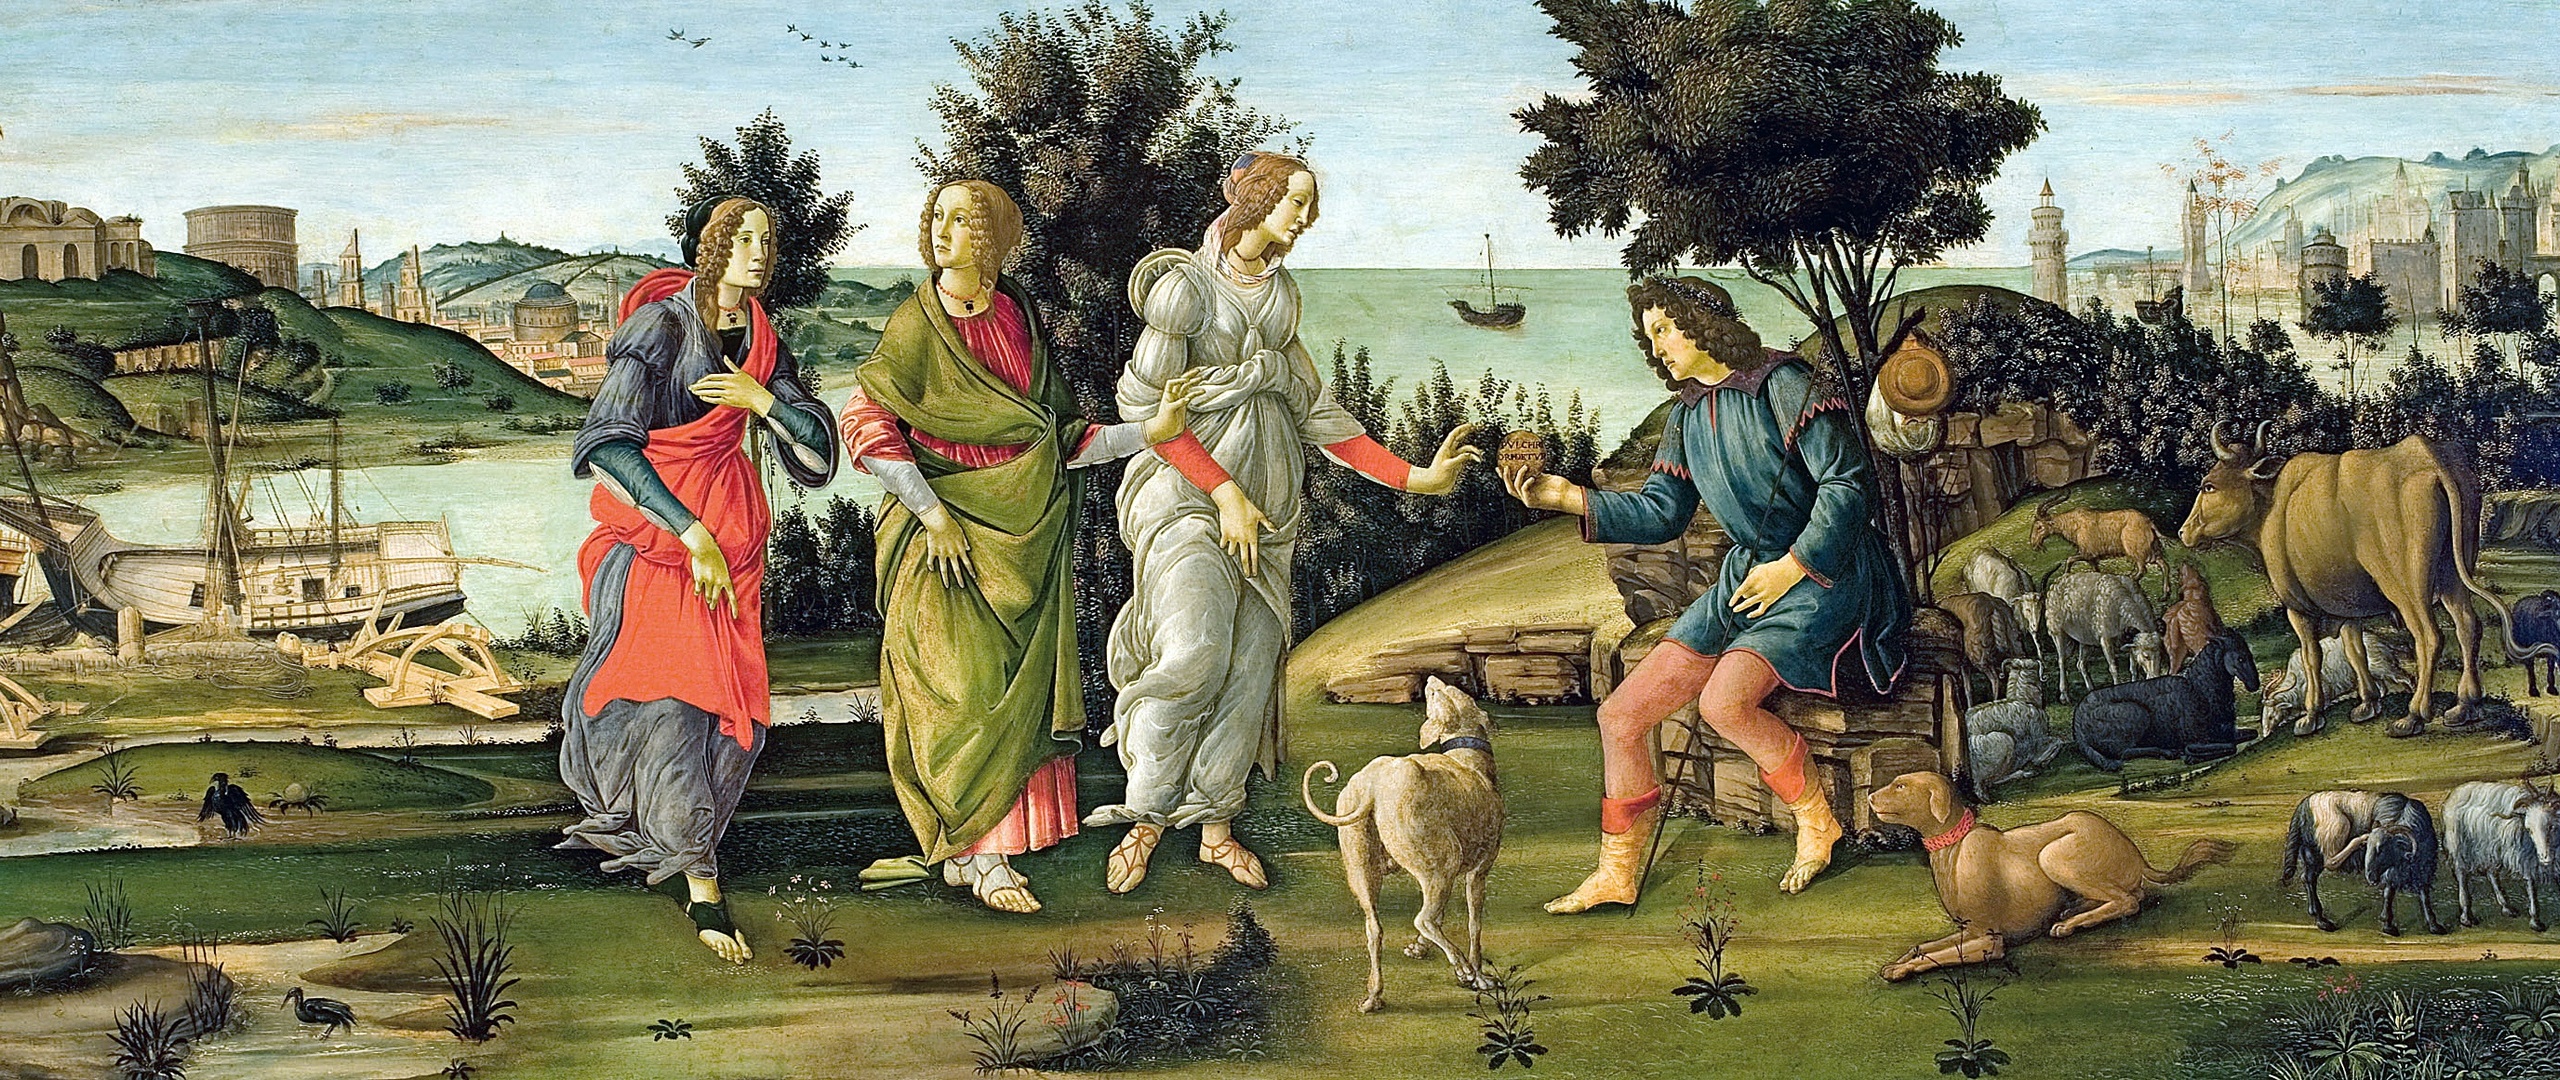 Primavera by Botticelli Wallpaper Mural  Hovia